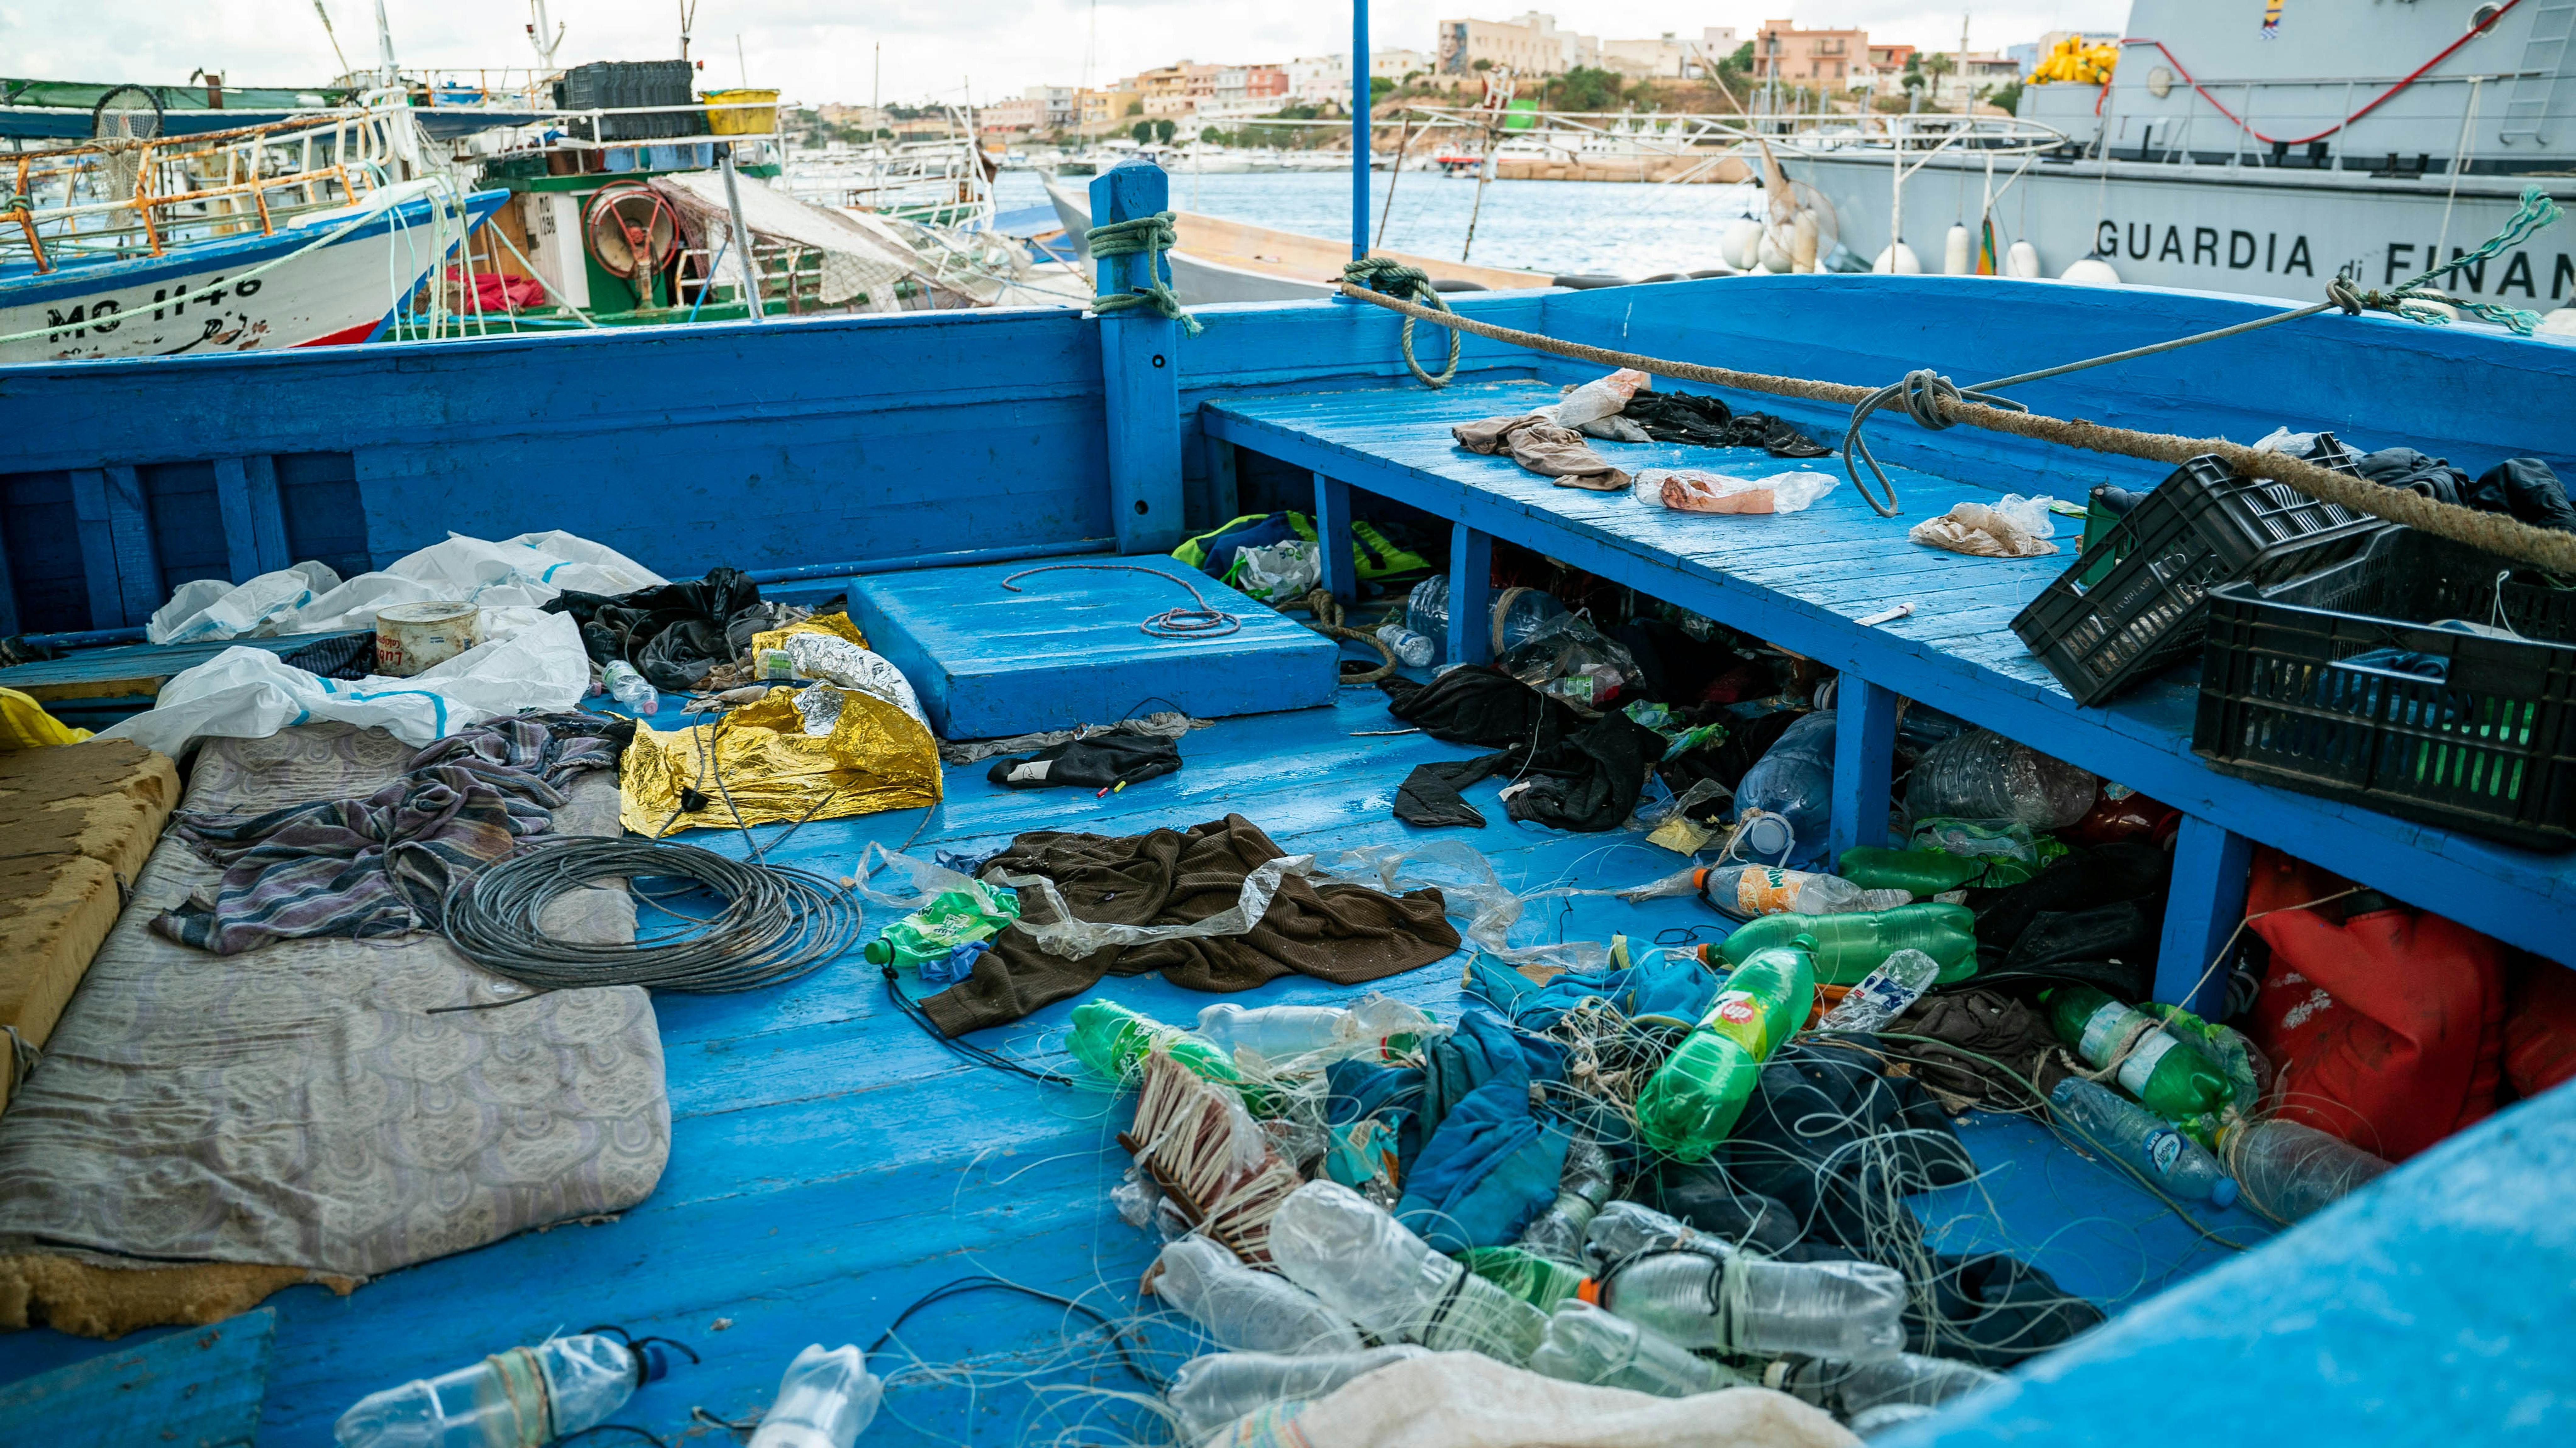 Lampedusa, Italia, vista di bottiglie d'acqua, vestiti scartati e altri oggetti lasciati a bordo di una barca che trasportava migranti attraverso il Mar Mediterraneo